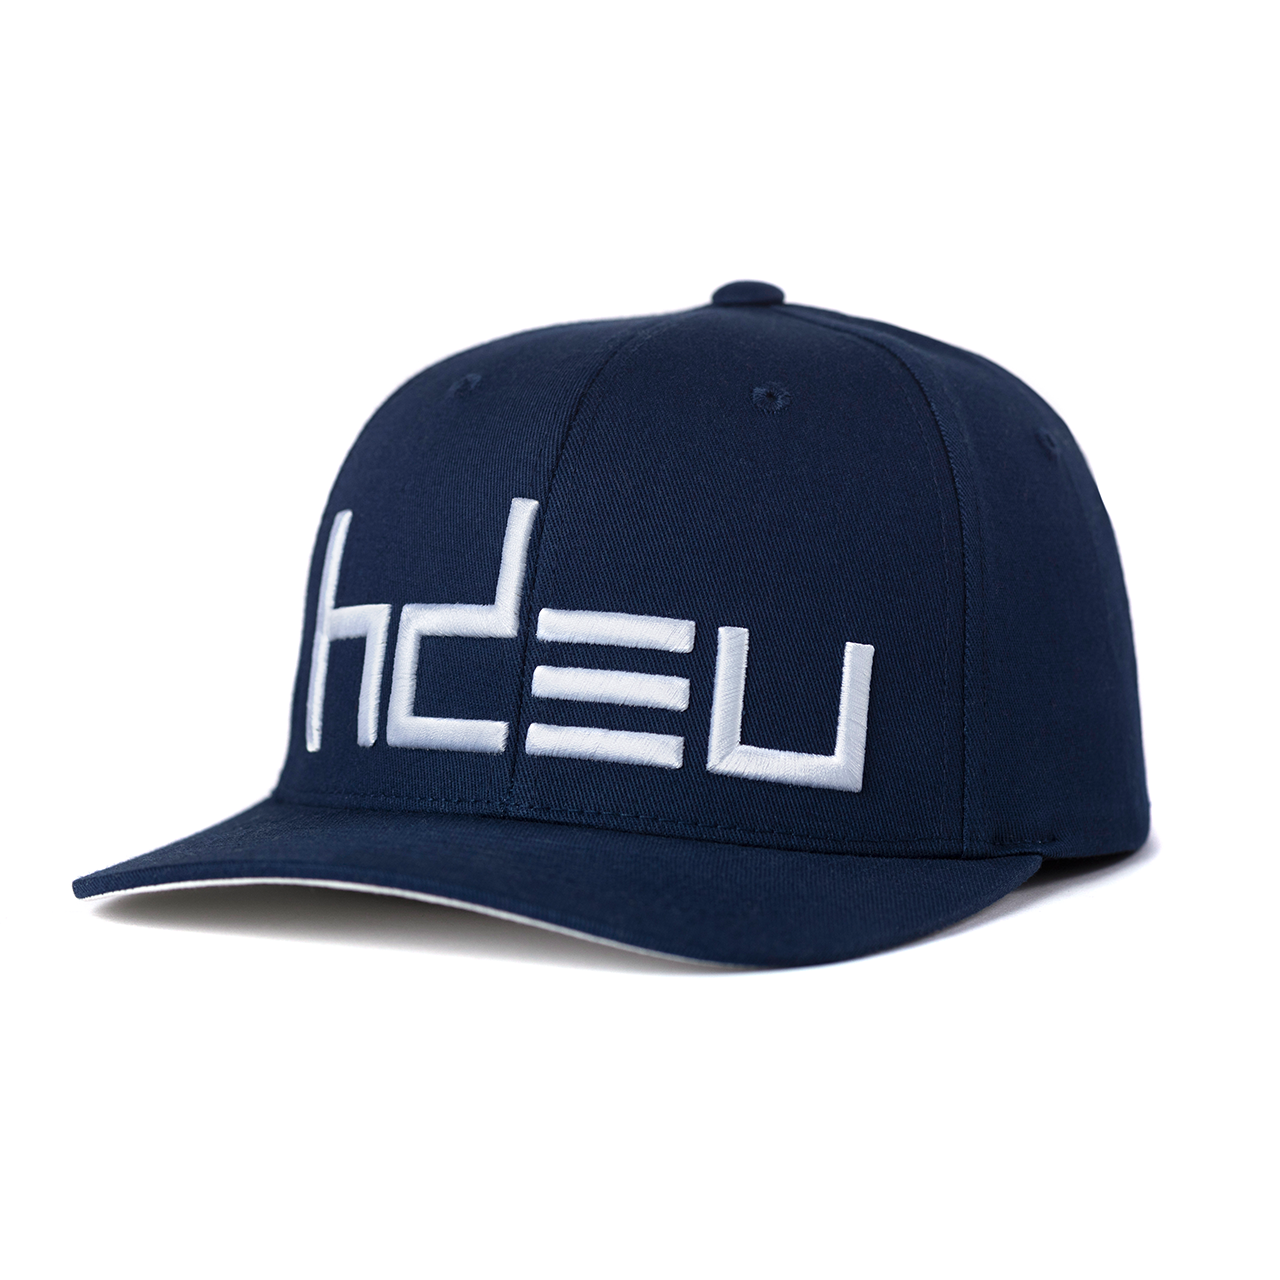 2022 HDEU CLASSIC NAVY FLEXFIT – Merchandise Official Up Eyes Head Down HAT